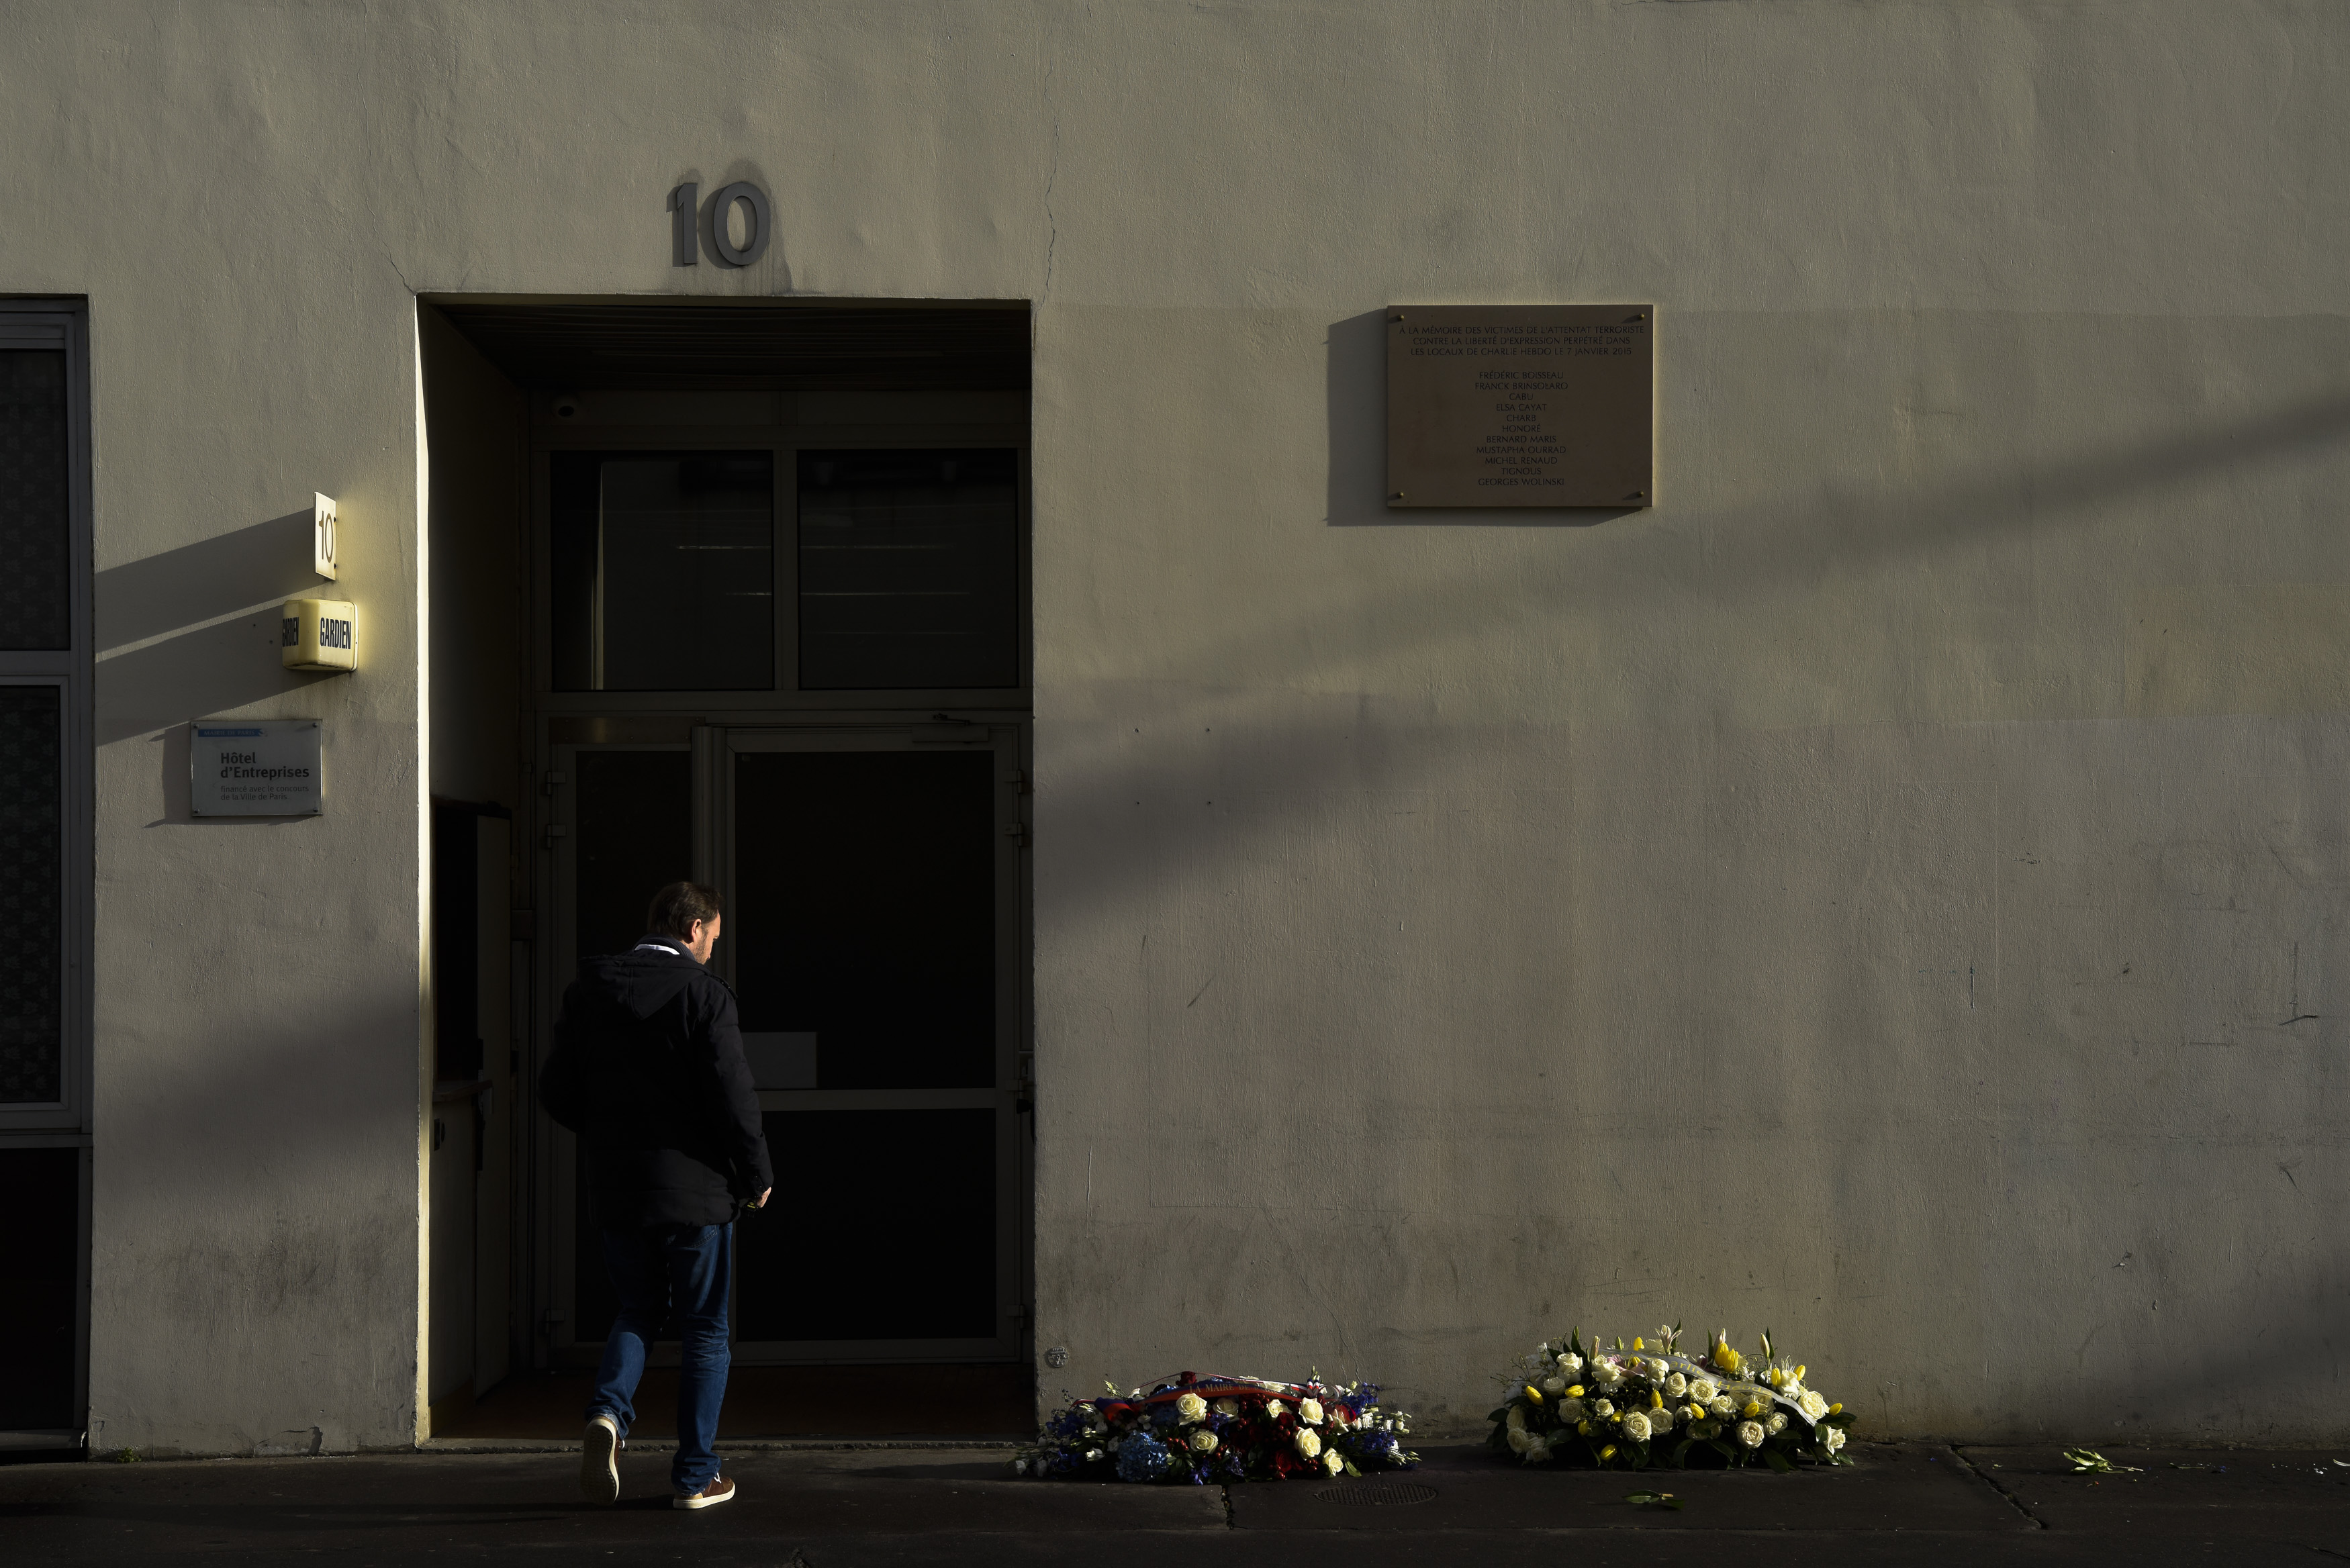 Възпоменателна табела и венци пред офиса на ”Шарли ебдо”, превърнал се в място на кървава трагедия